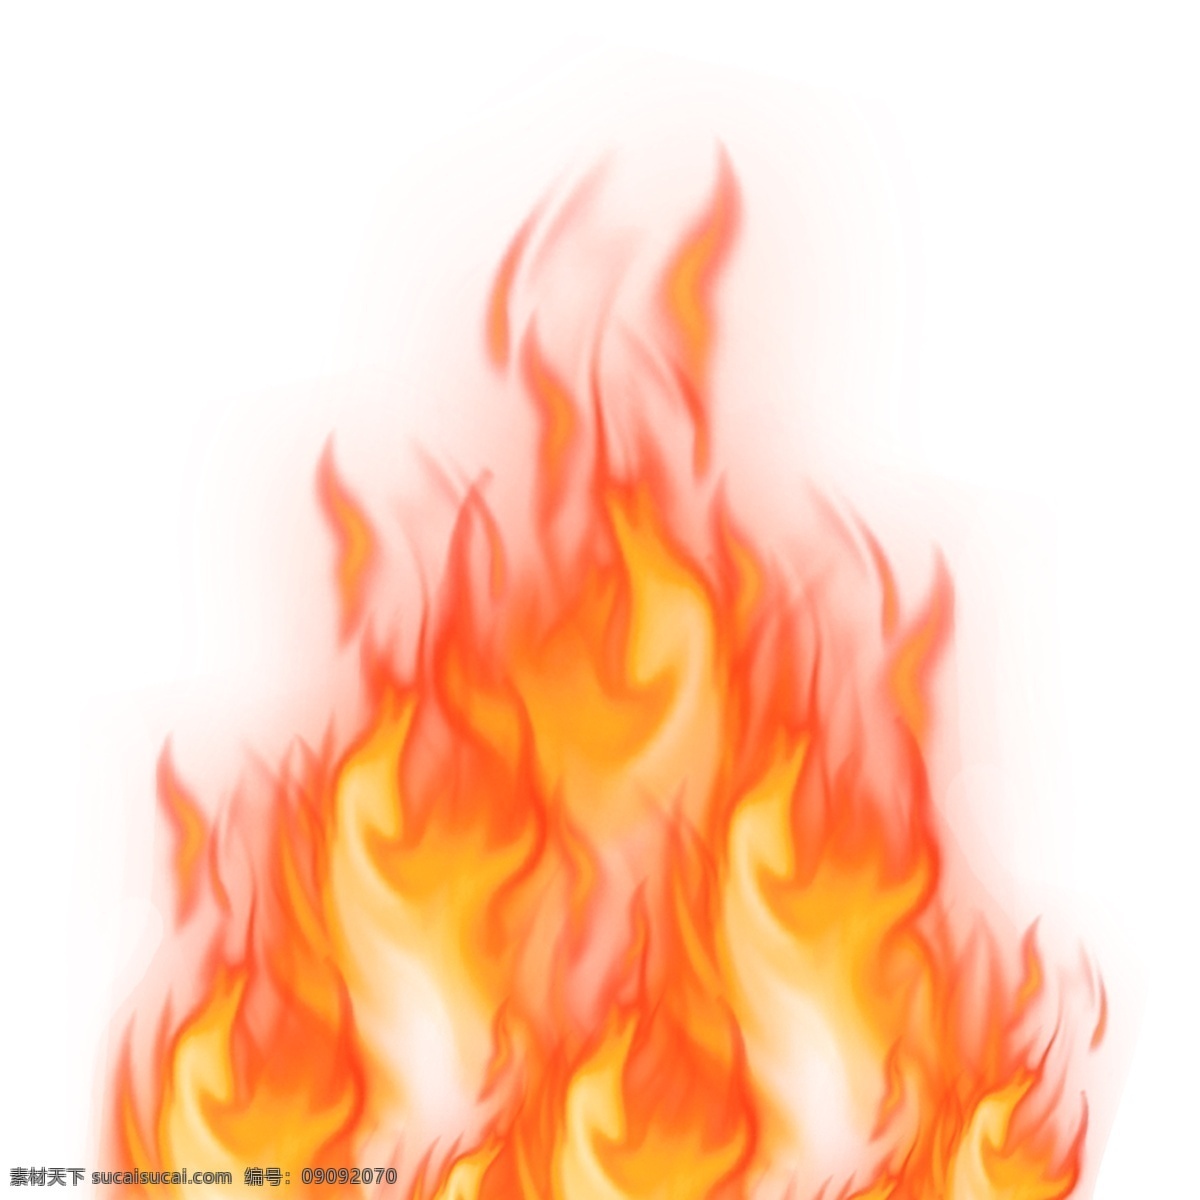 大火图片 火焰 火焰元素 火焰素材 火苗 火 火元素 火素材 火焰装饰 火苗装饰 火苗素材 大火 大火元素 大火素材 元素设计 动漫动画 风景漫画